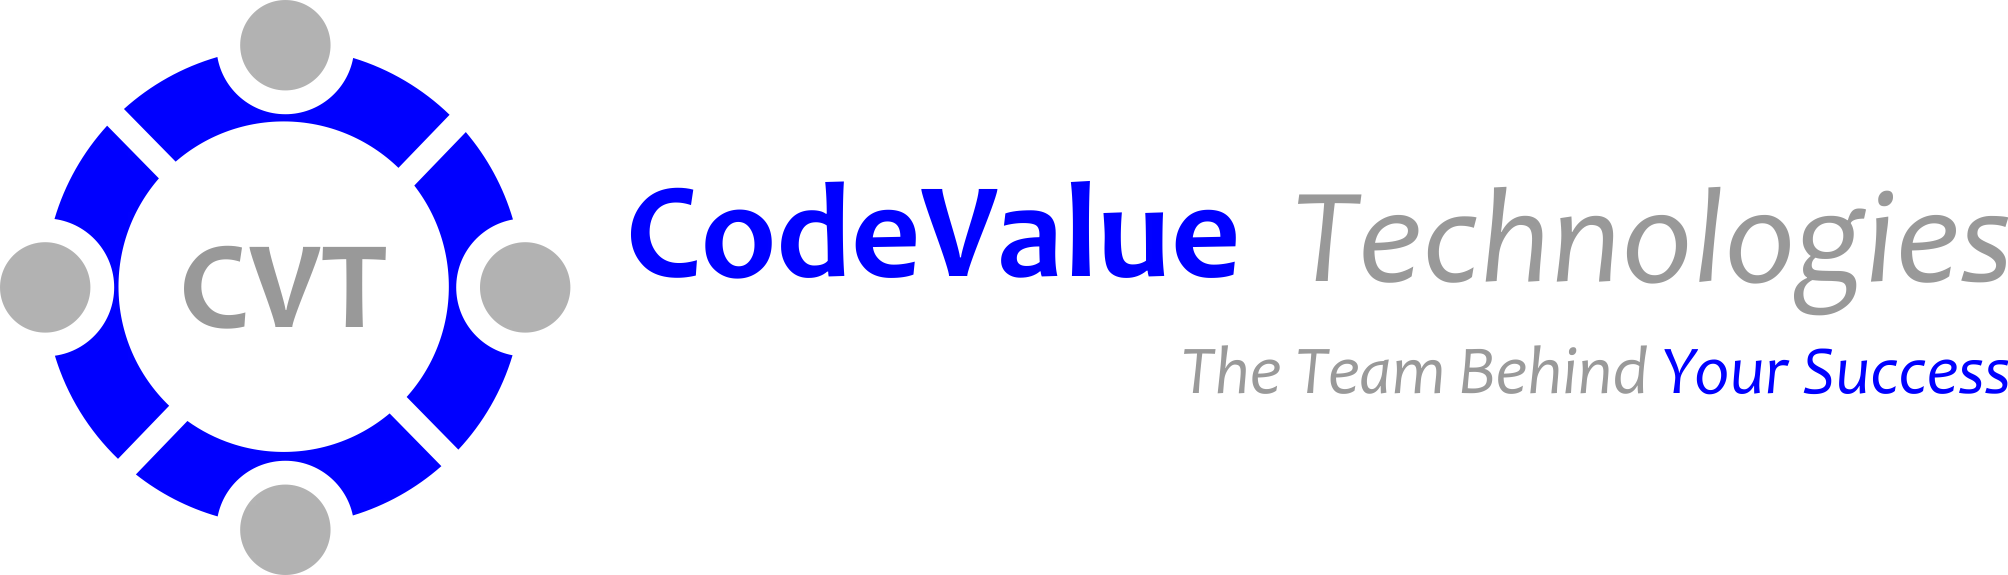 Code value